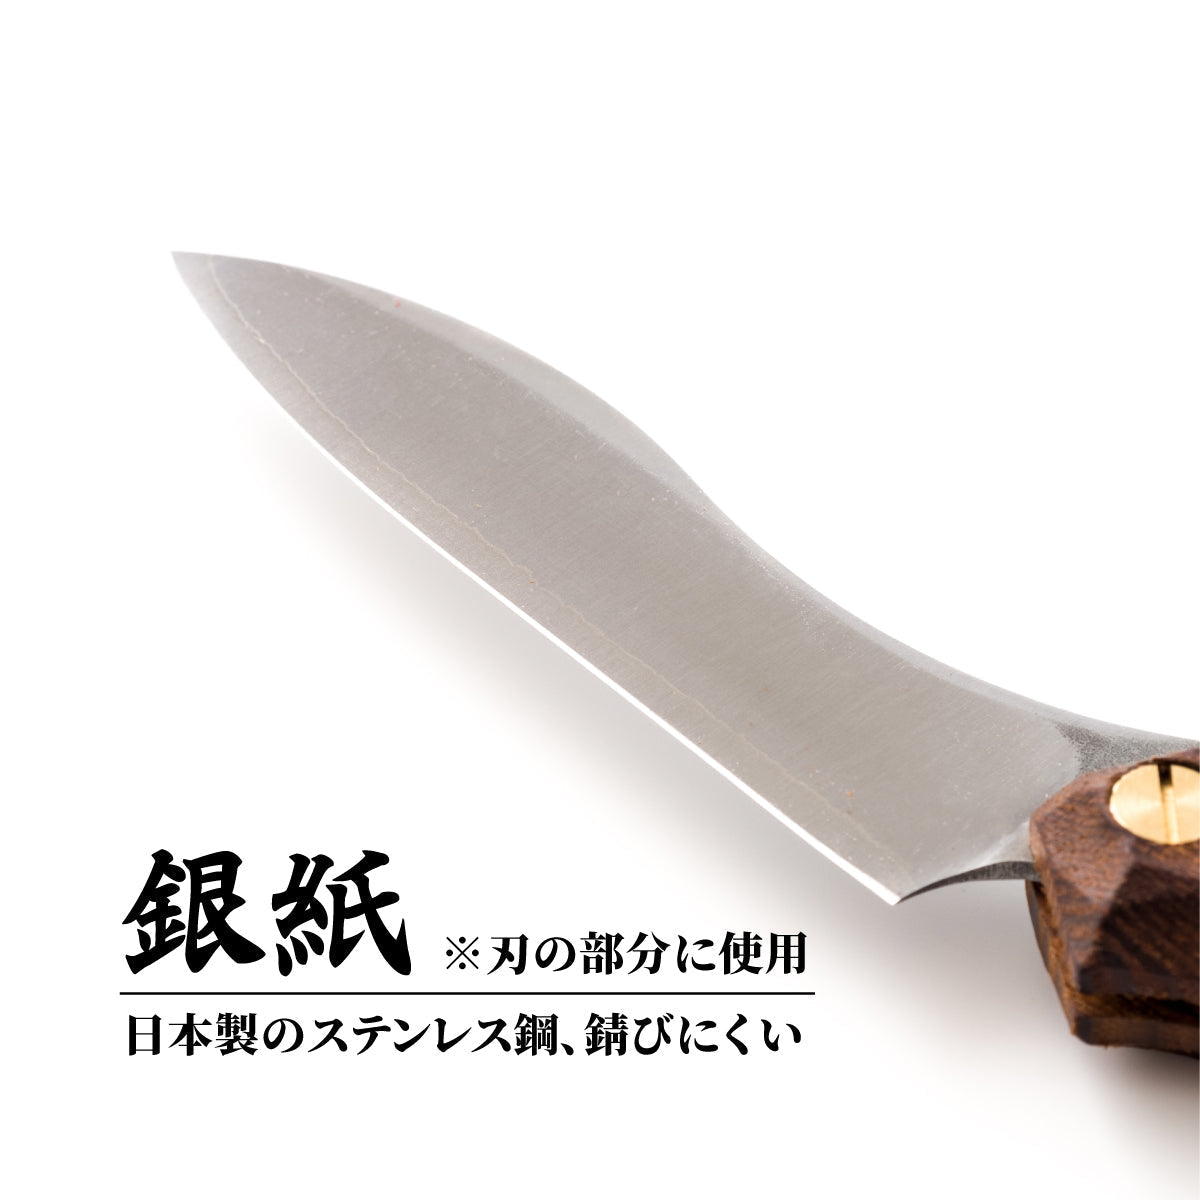 折畳式料理ナイフ マルチカラー2019 ランダムアソート (ステンレス鋼/銀紙三号) 9,900円